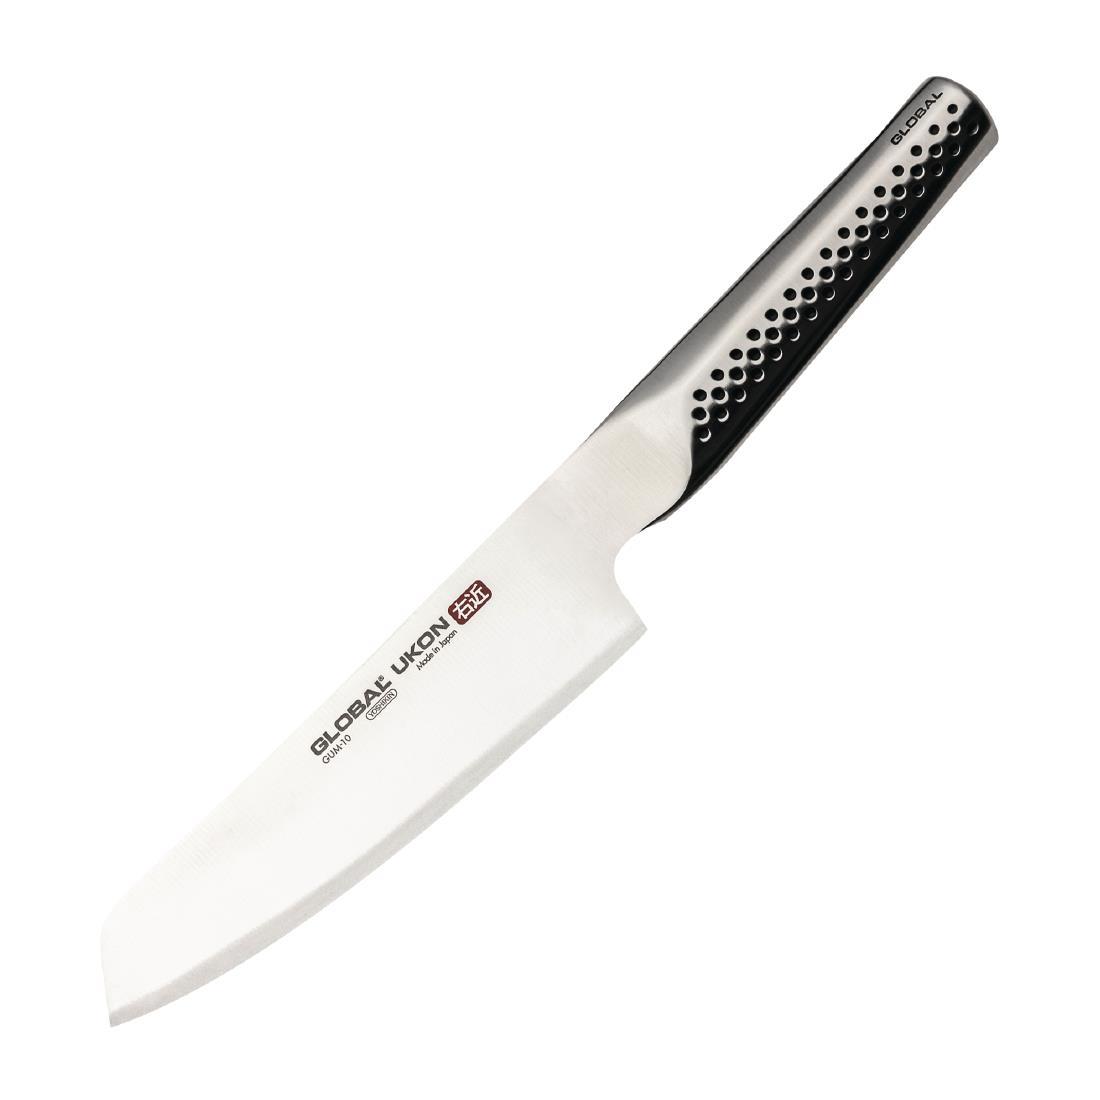 Global Knives Ukon Range Vegetable Knife 14cm - FX054  - 1